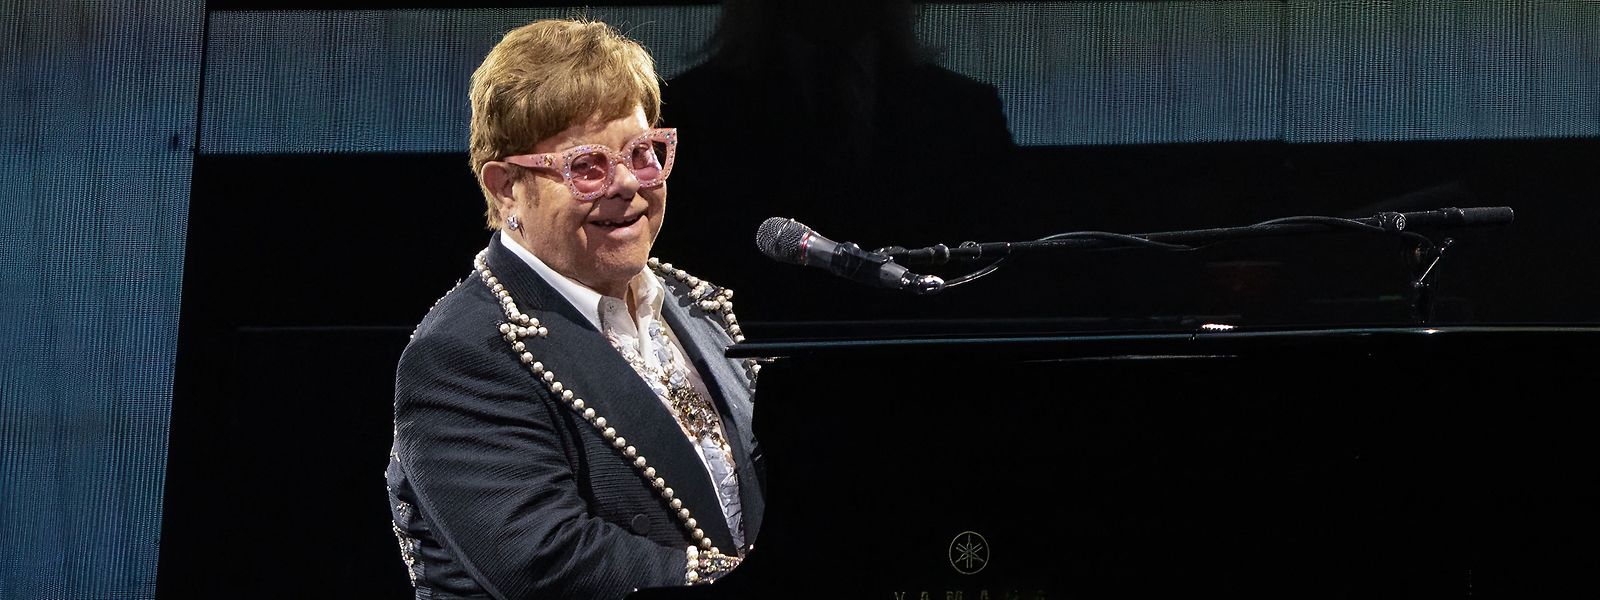 Mit Elton Johns letztem Konzert auf britischem Boden endet eine Ära.